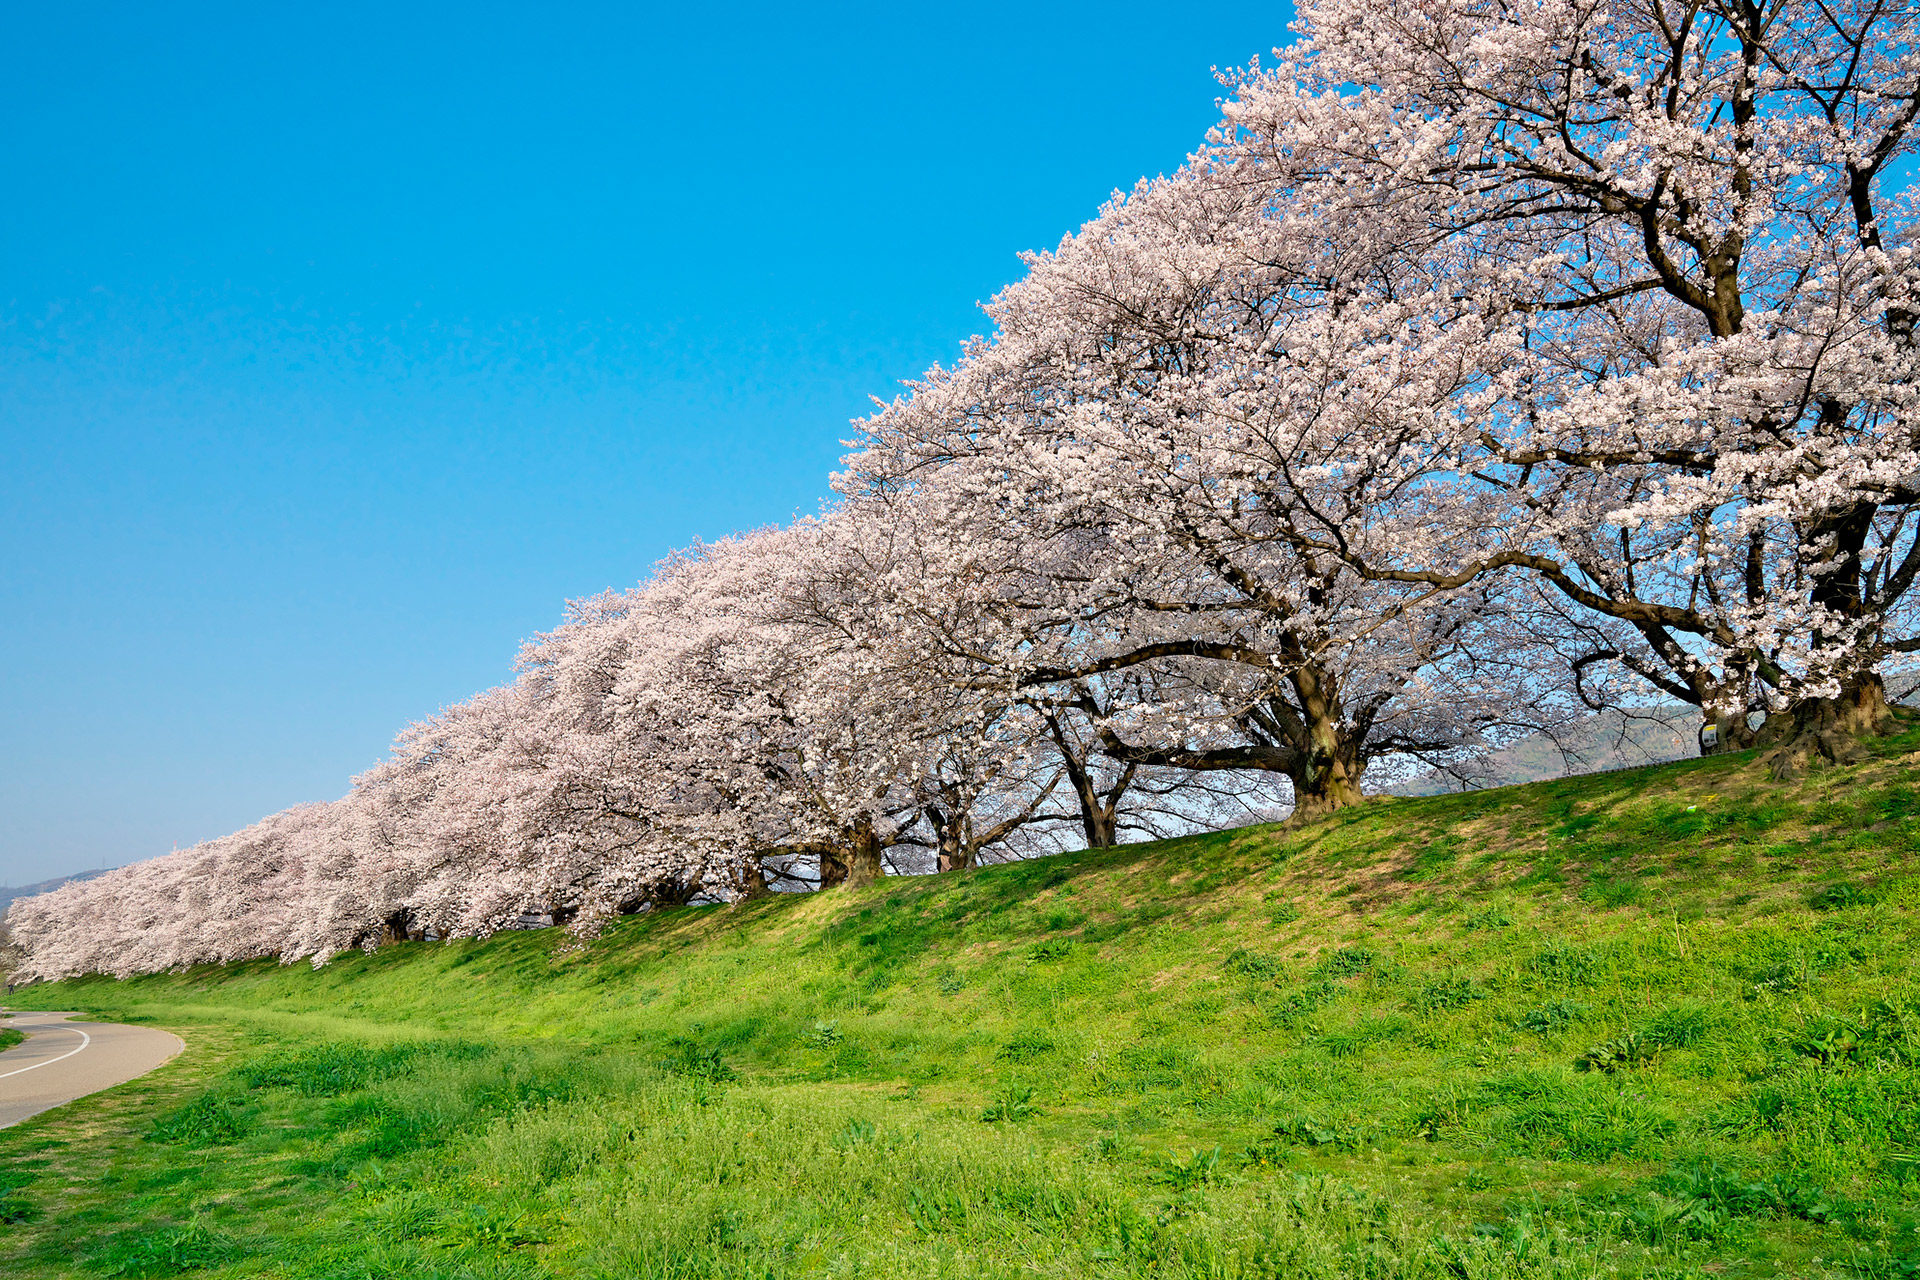 京都の桜の満開の時期はいつ頃 過去の満開の時期は Caedekyoto カエデ京都 紅葉と伝統美を引き継ぐバッグ